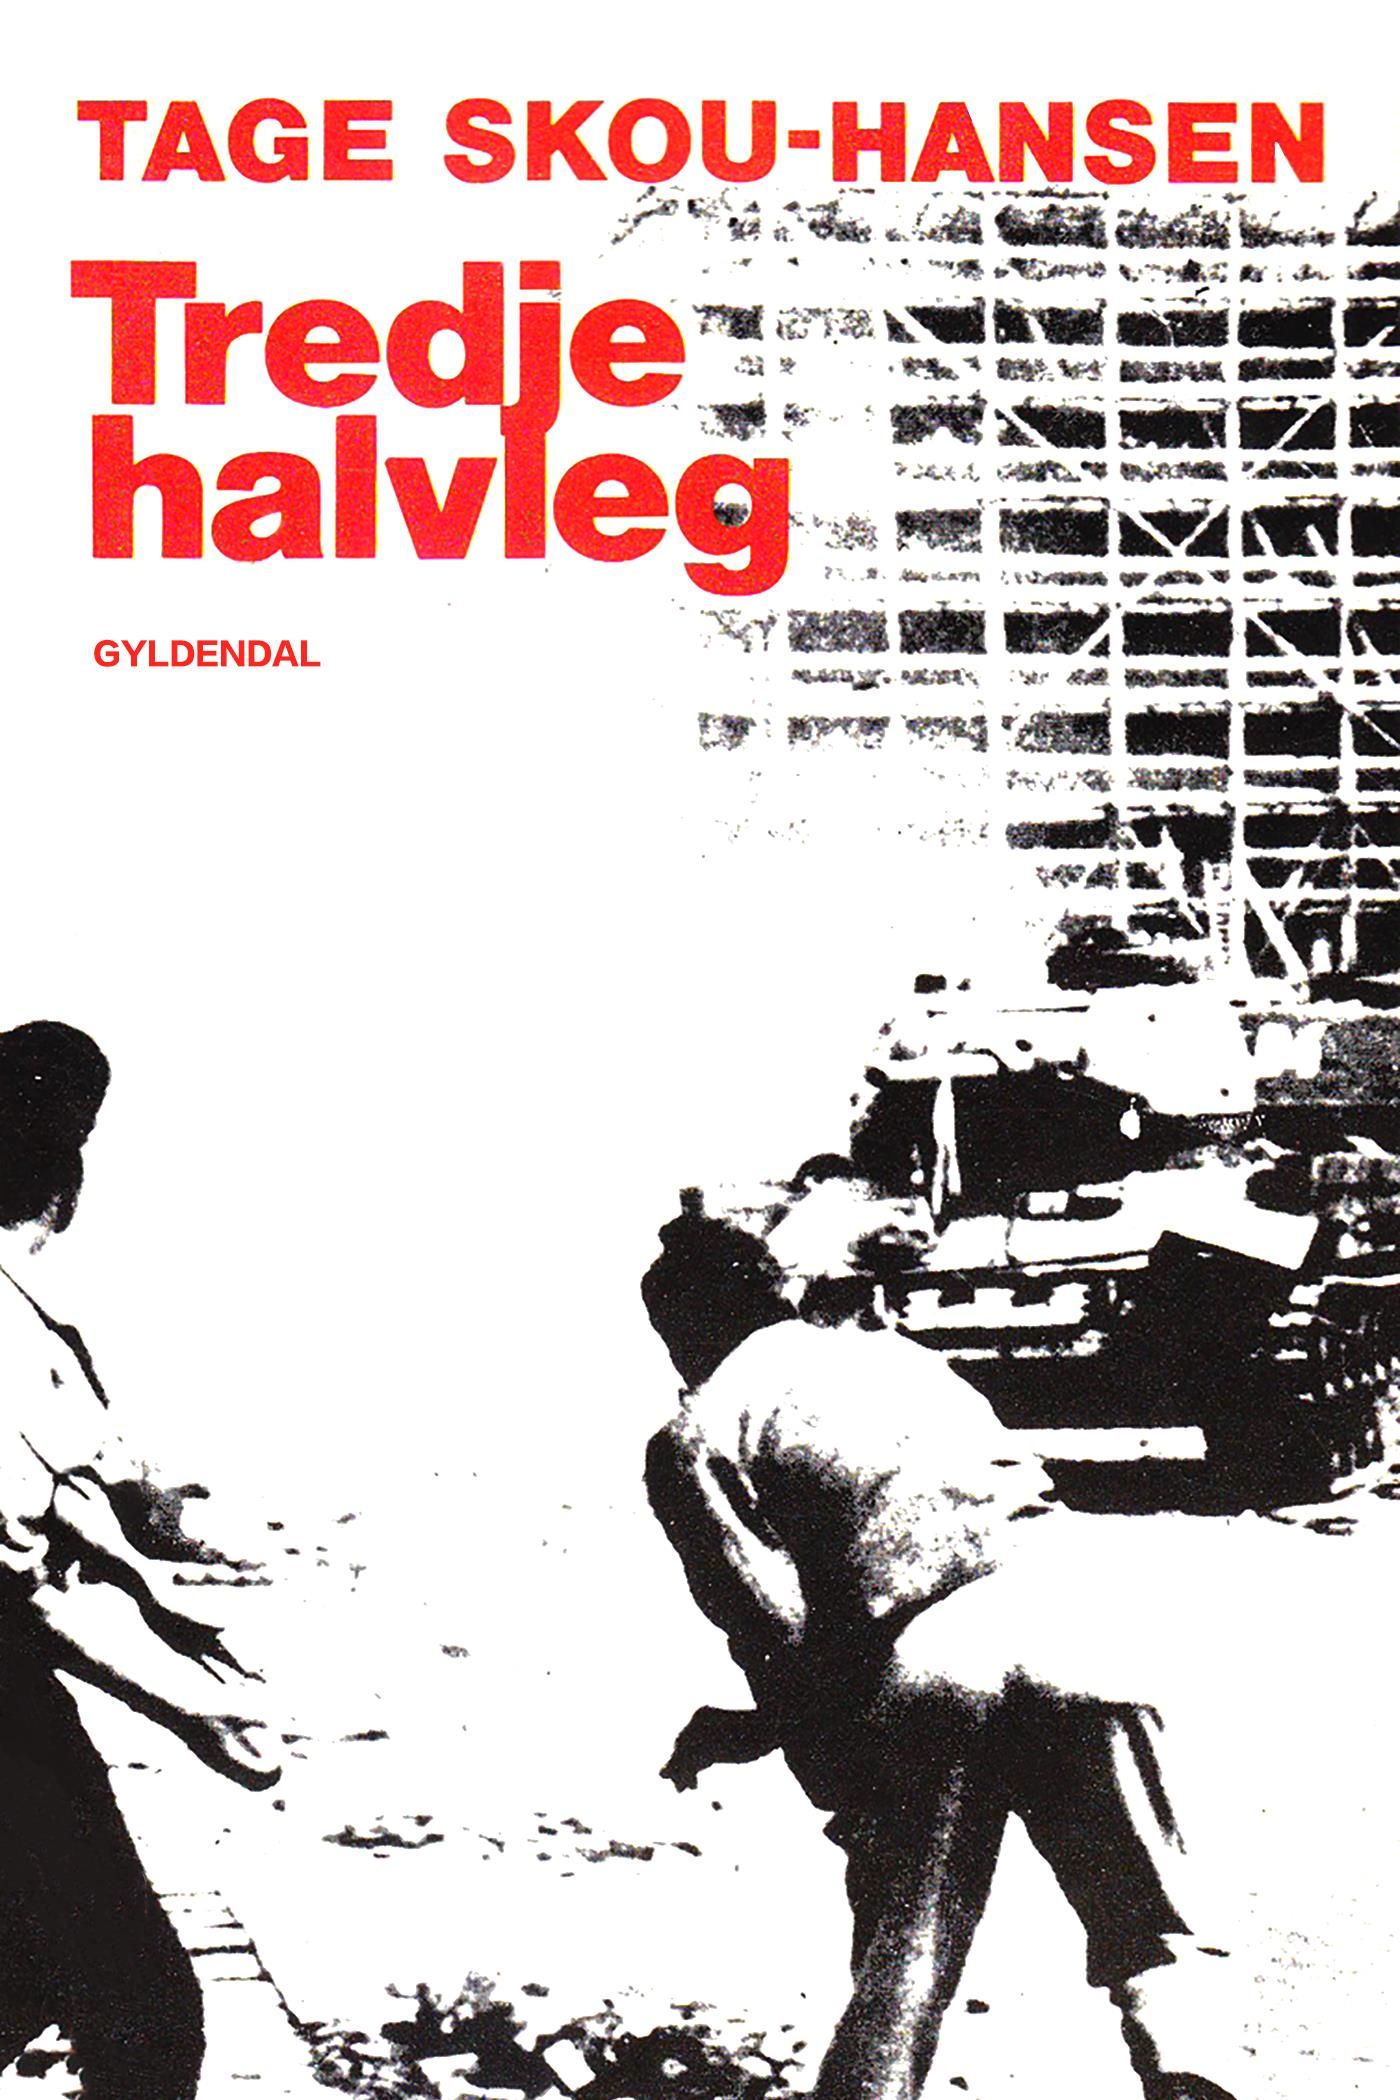 Tredje halvleg, e-bok av Tage Skou-Hansen